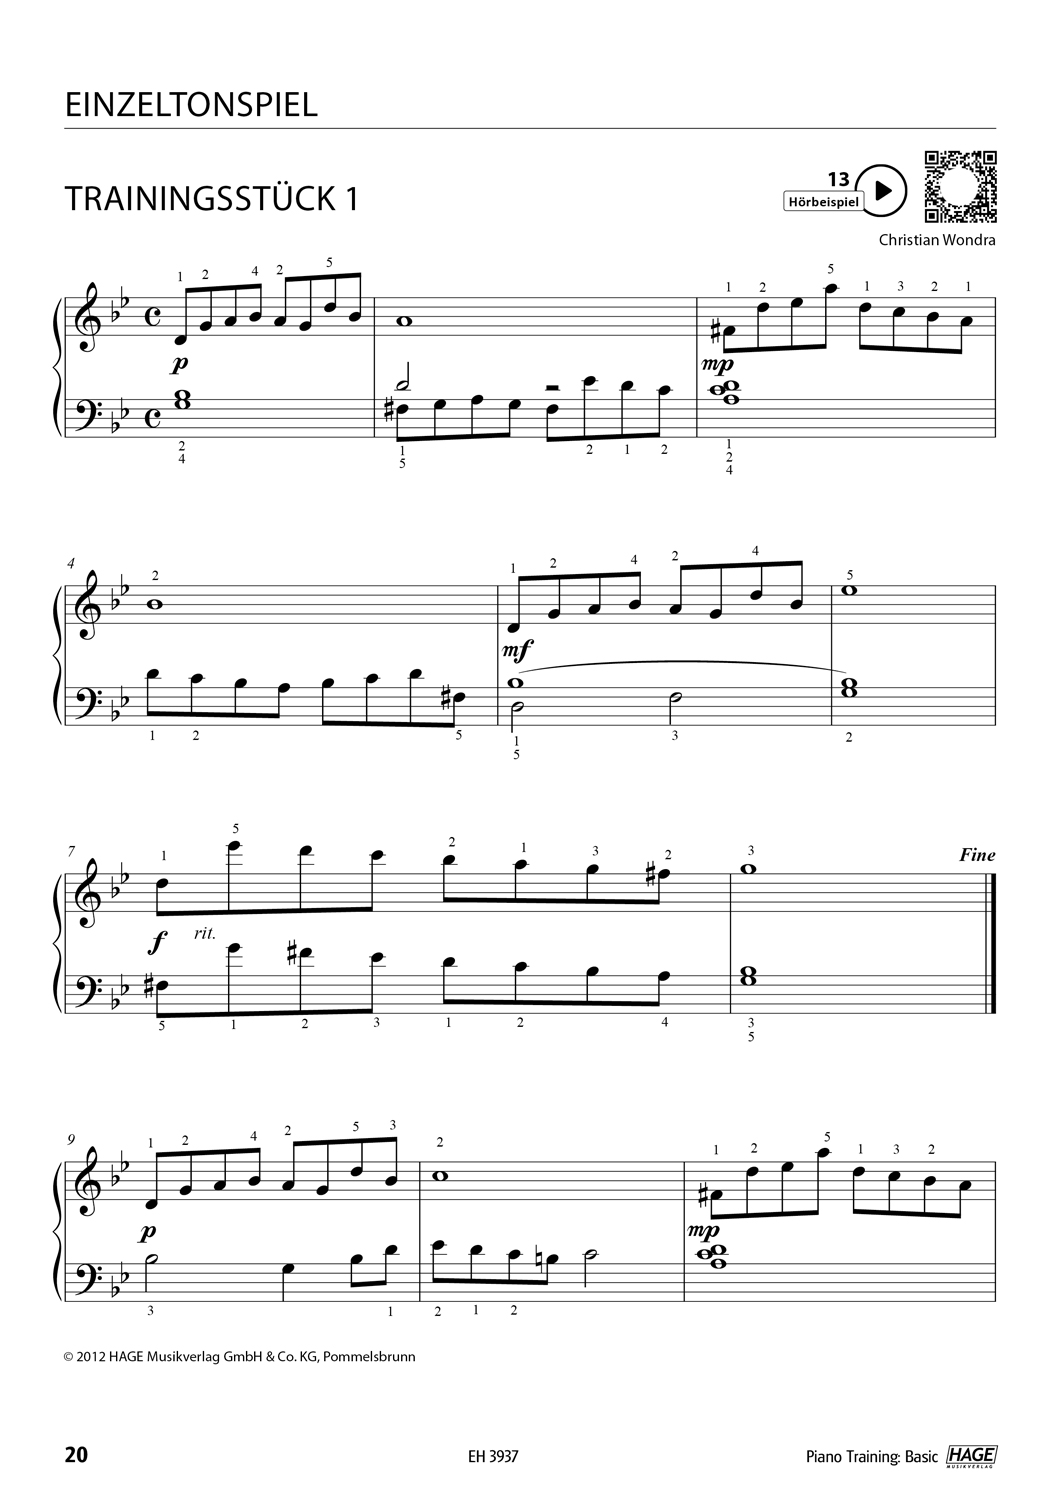 Piano Training Basic Seiten 9